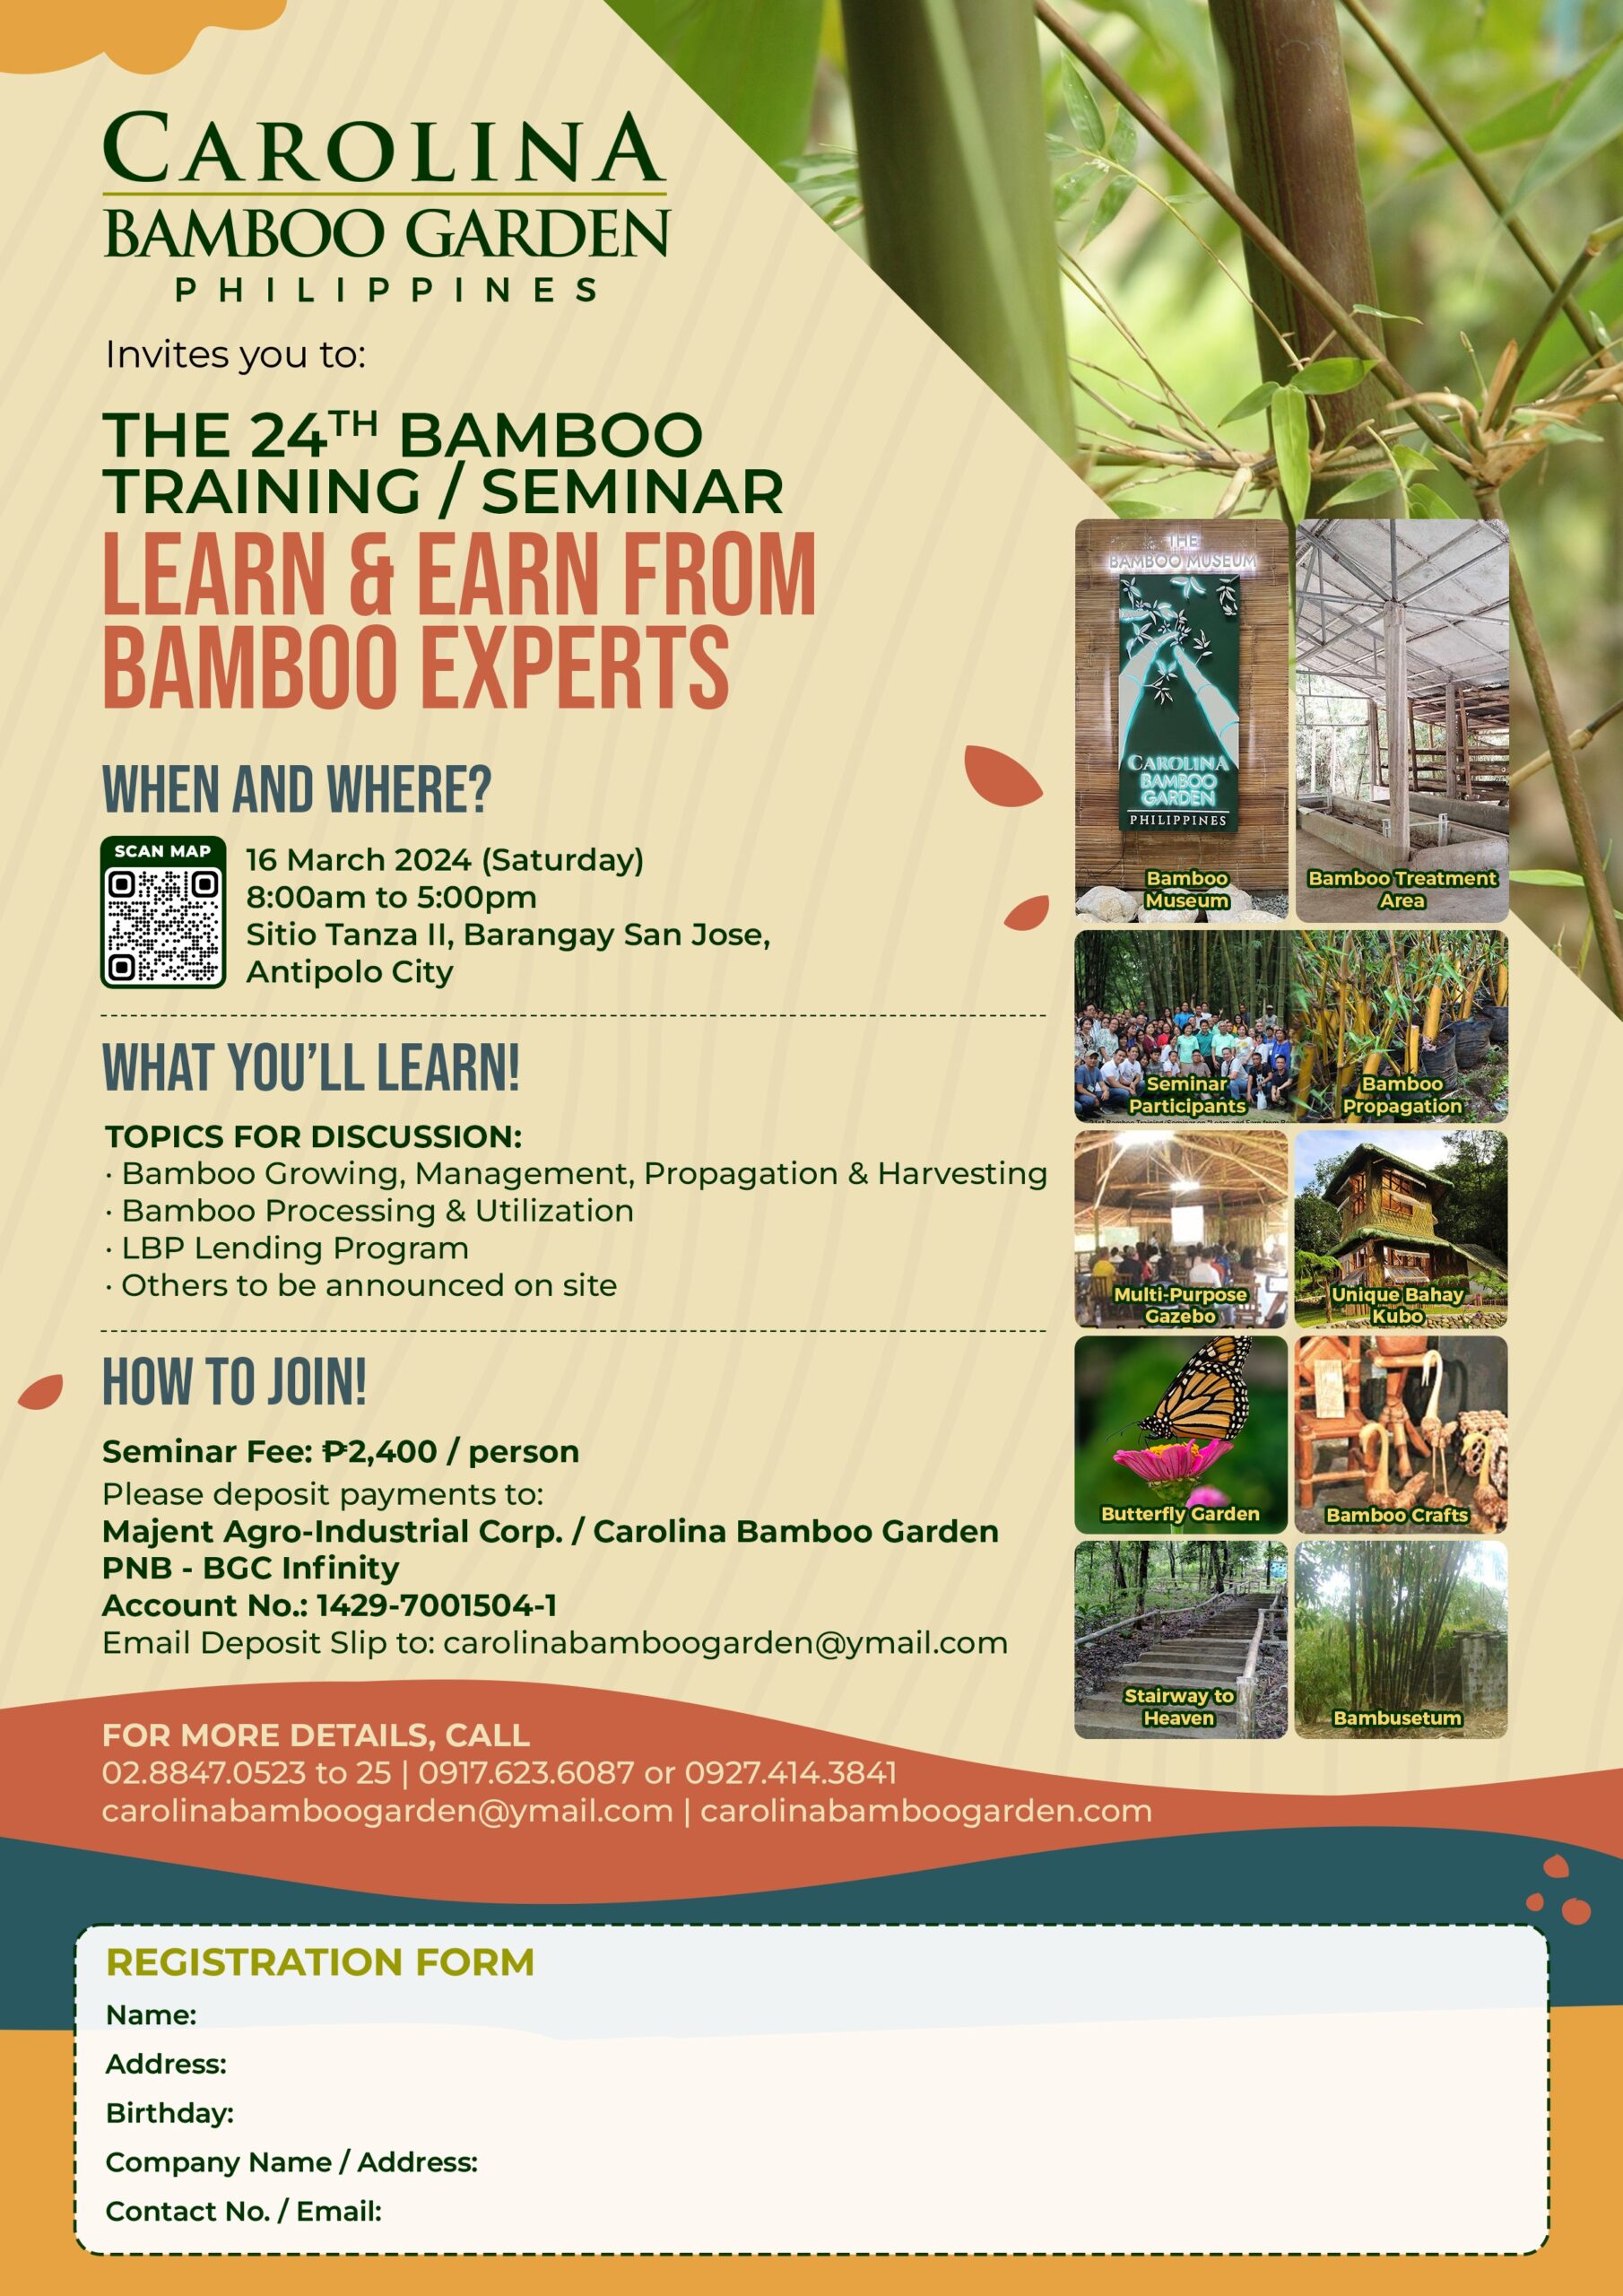 Learn and Earn from Bamboo Experts | Carolina Bamboo Garden